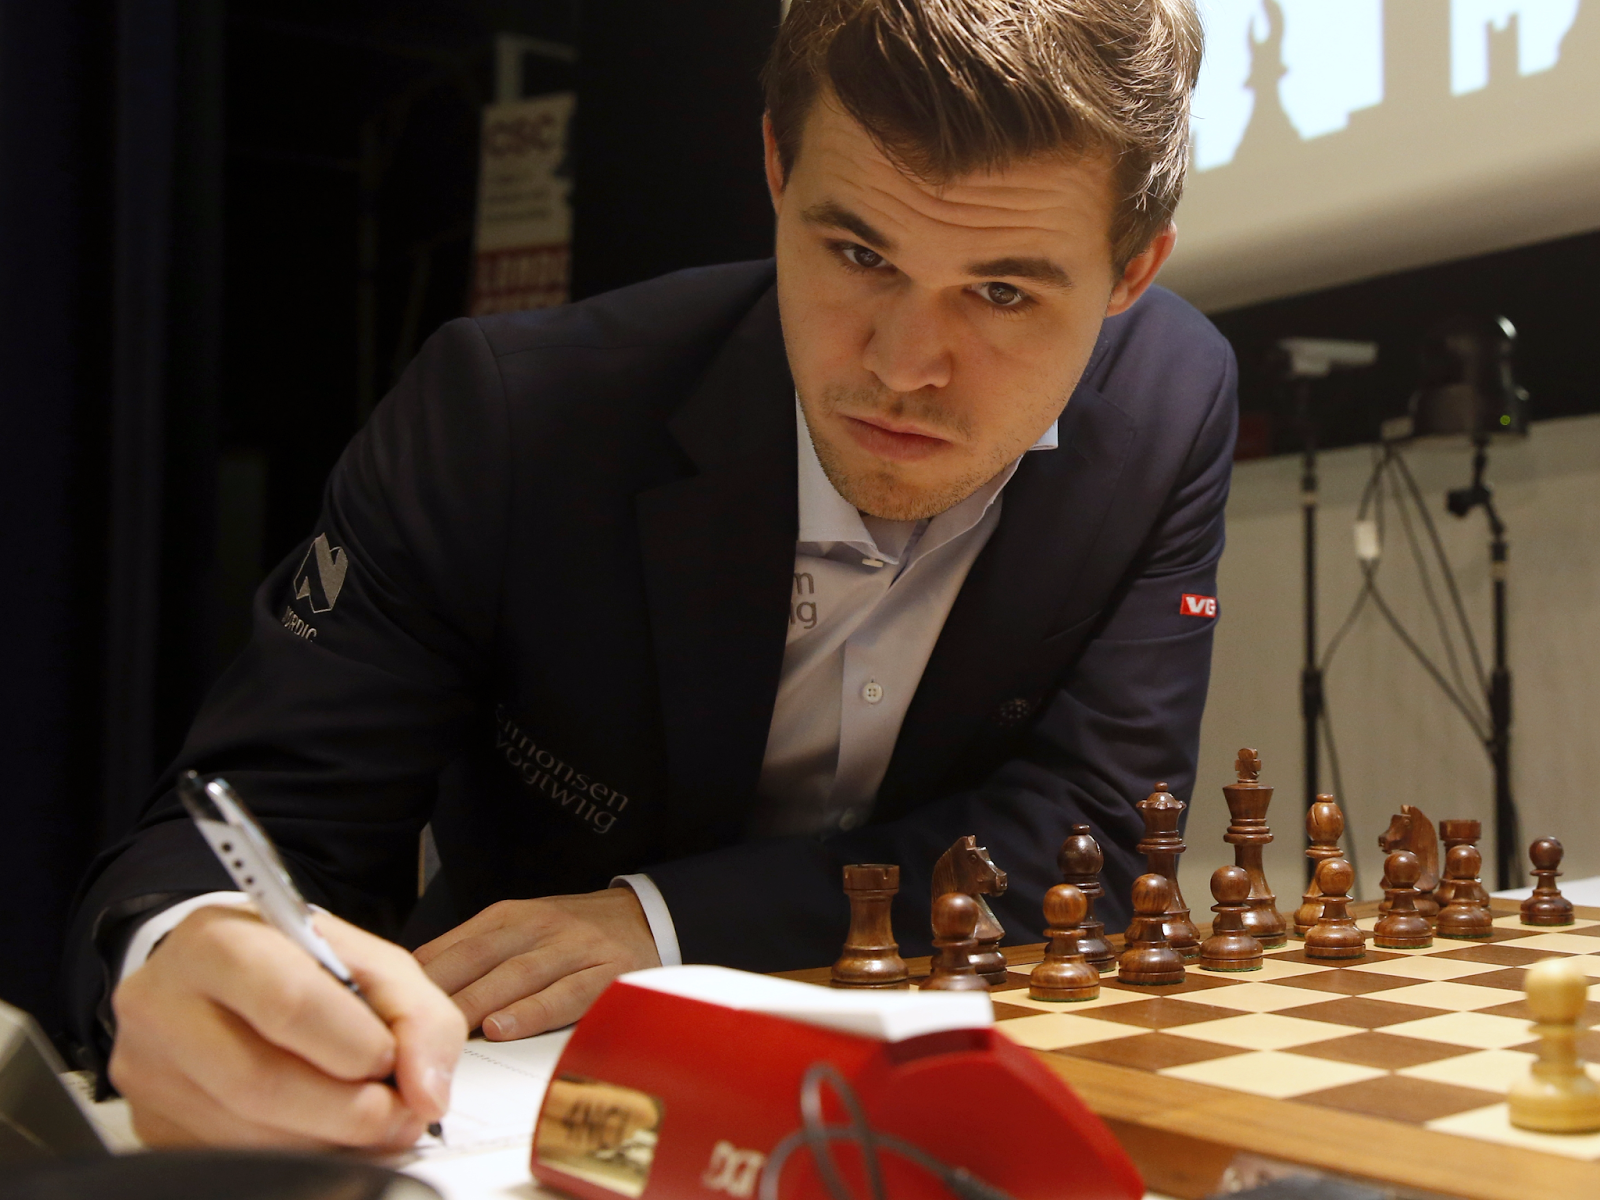 Magnus Carlsen ensina a jogar na abertura (Iniciantes)  Novo vídeo de  xadrez, dessa vez para INICIANTES! MAGNUS CARLSEN ensina o que fazer no  início do jogo de xadrez, chamamos de ABERTURA